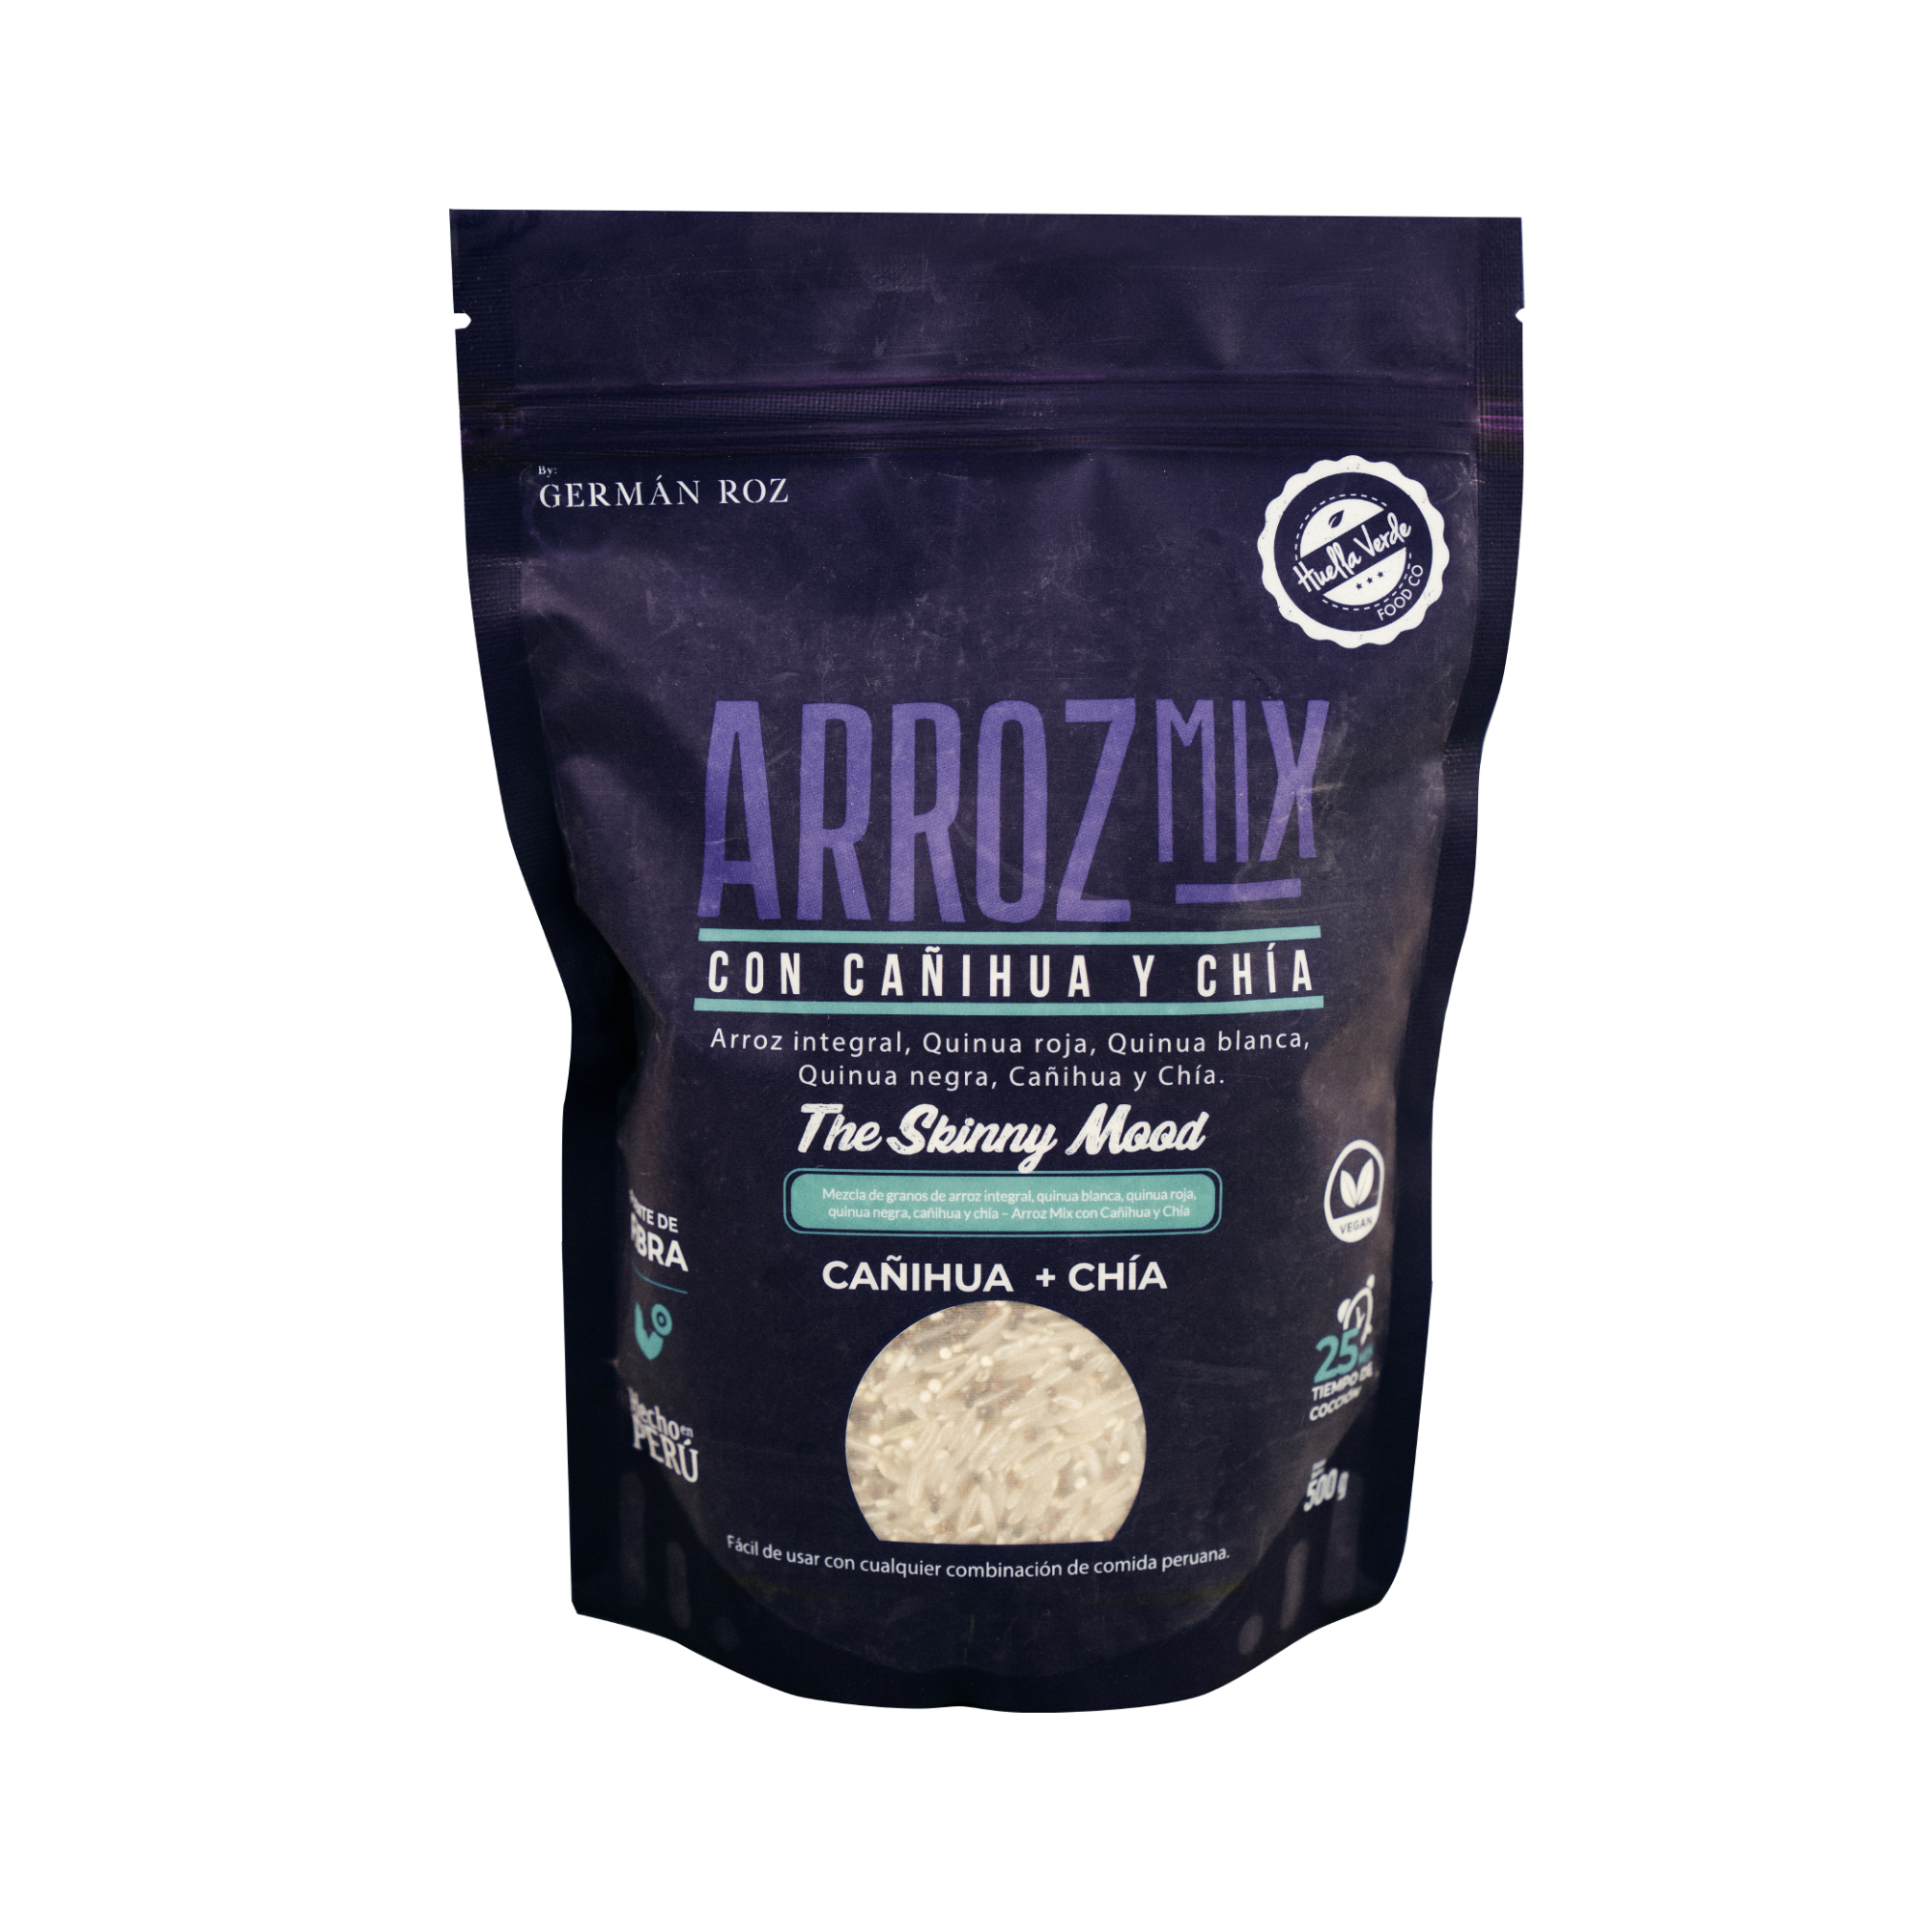 ¡Complementa tus comidas con nuestro nuevo Arroz Mix!

Contiene 4 veces más de proteína y 17 veces más de fibra que un arroz convencional. Hecho con insumos 100% peruanos y naturales.

Ingredientes: Arroz integral, granos de quinua tricolor, granos de cañihua y semillas de chía.

Doypack:500g

 
